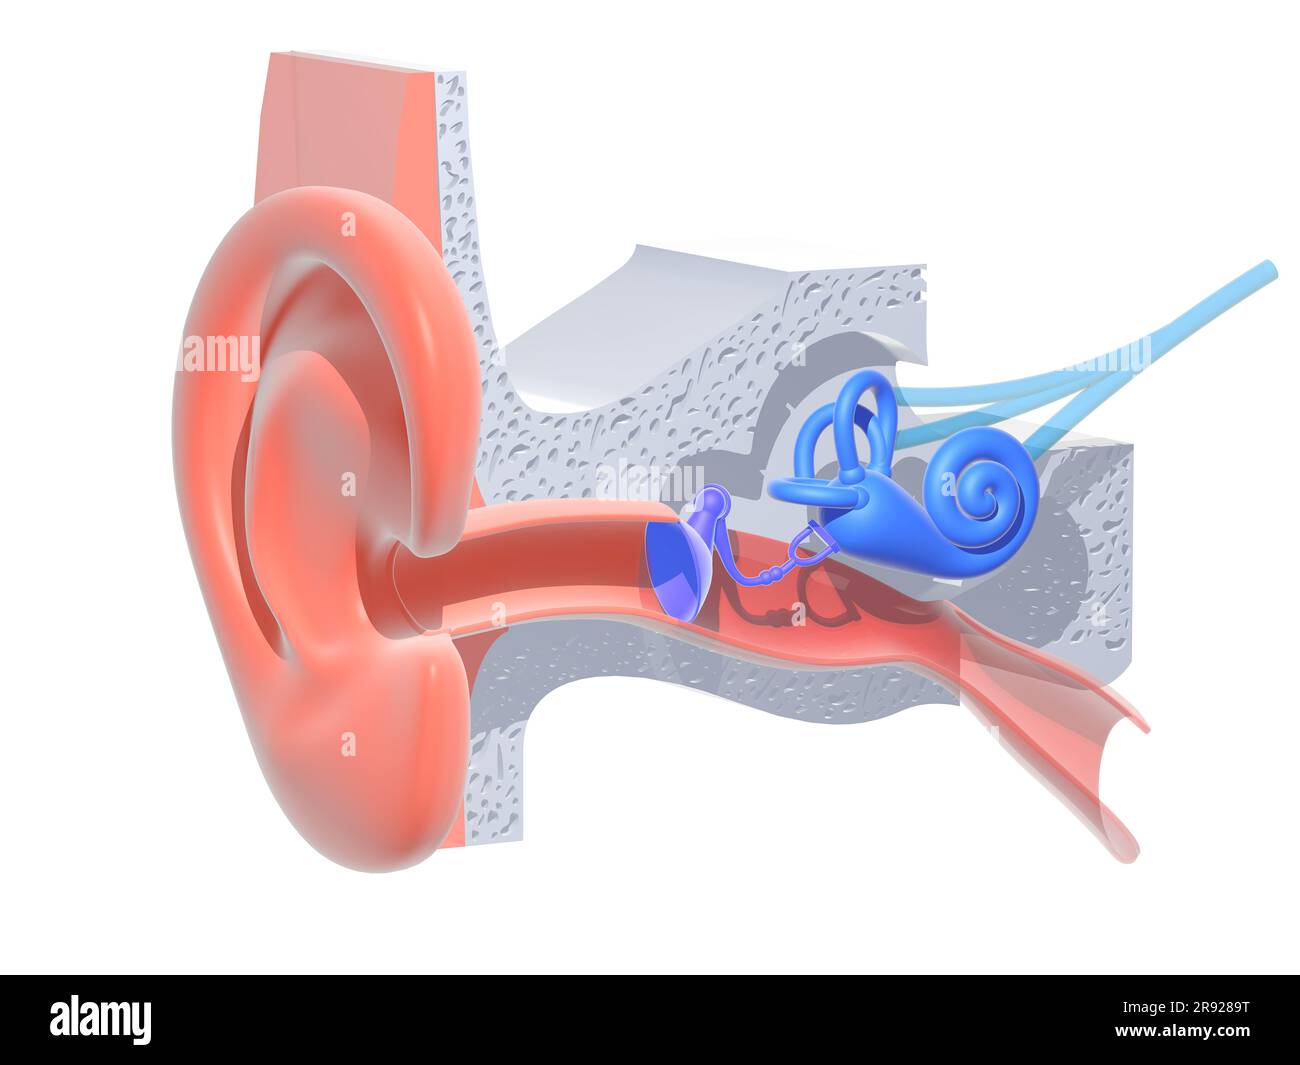 illustrazione 3d dell'anatomia dell'orecchio interno su sfondo bianco. Rappresentazione grafica trasparente dell'interno; lumaca, ossa, timpano, nervi e orecchie. Foto Stock